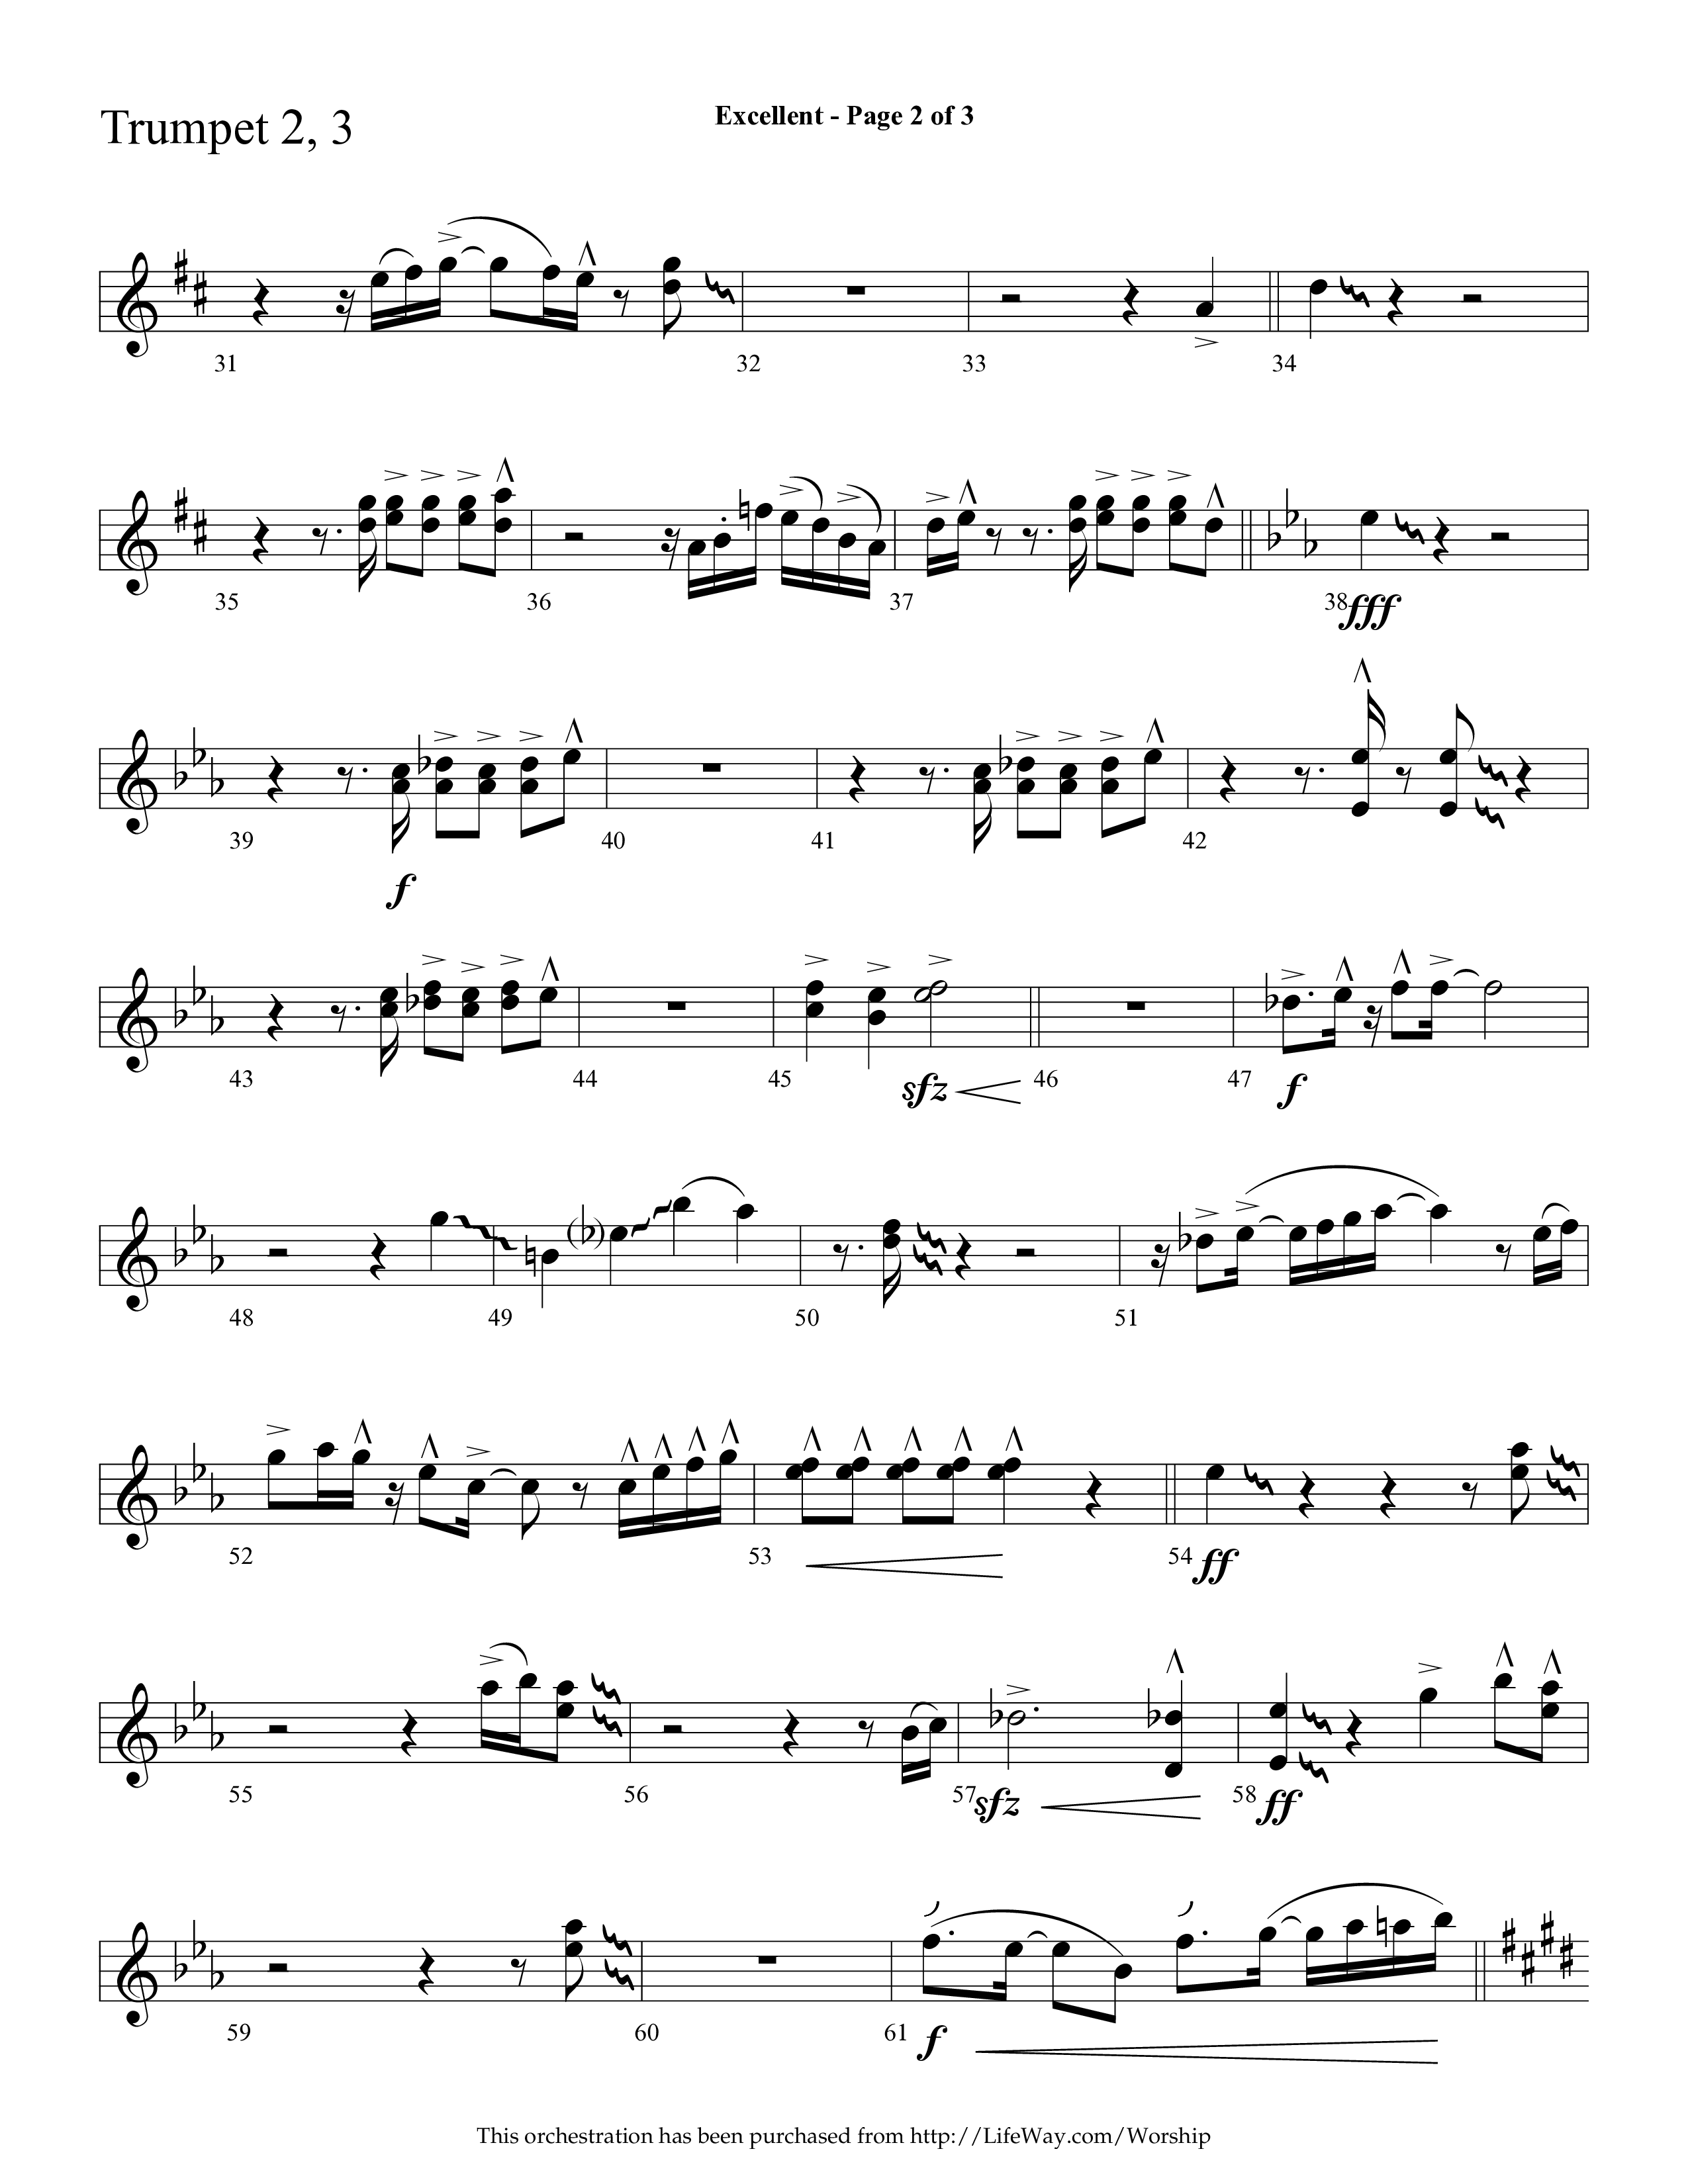 Excellent (Choral Anthem SATB) Trumpet 2/3 (Lifeway Choral / Arr. Cliff Duren)